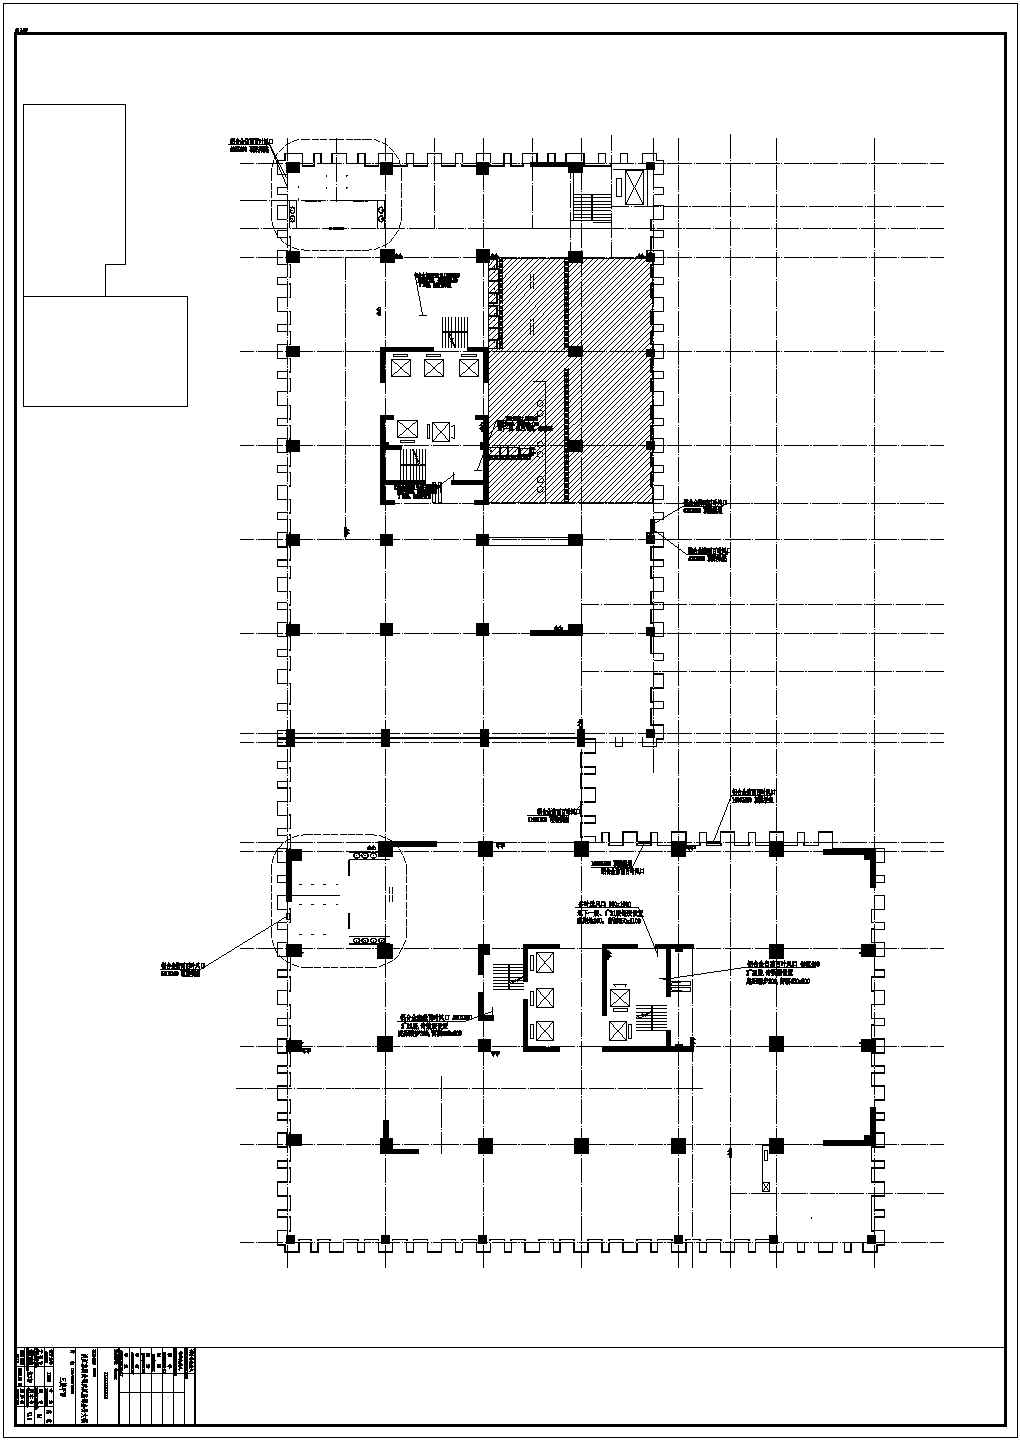 公司总部大楼主楼、副楼、裙房建筑结构施工图